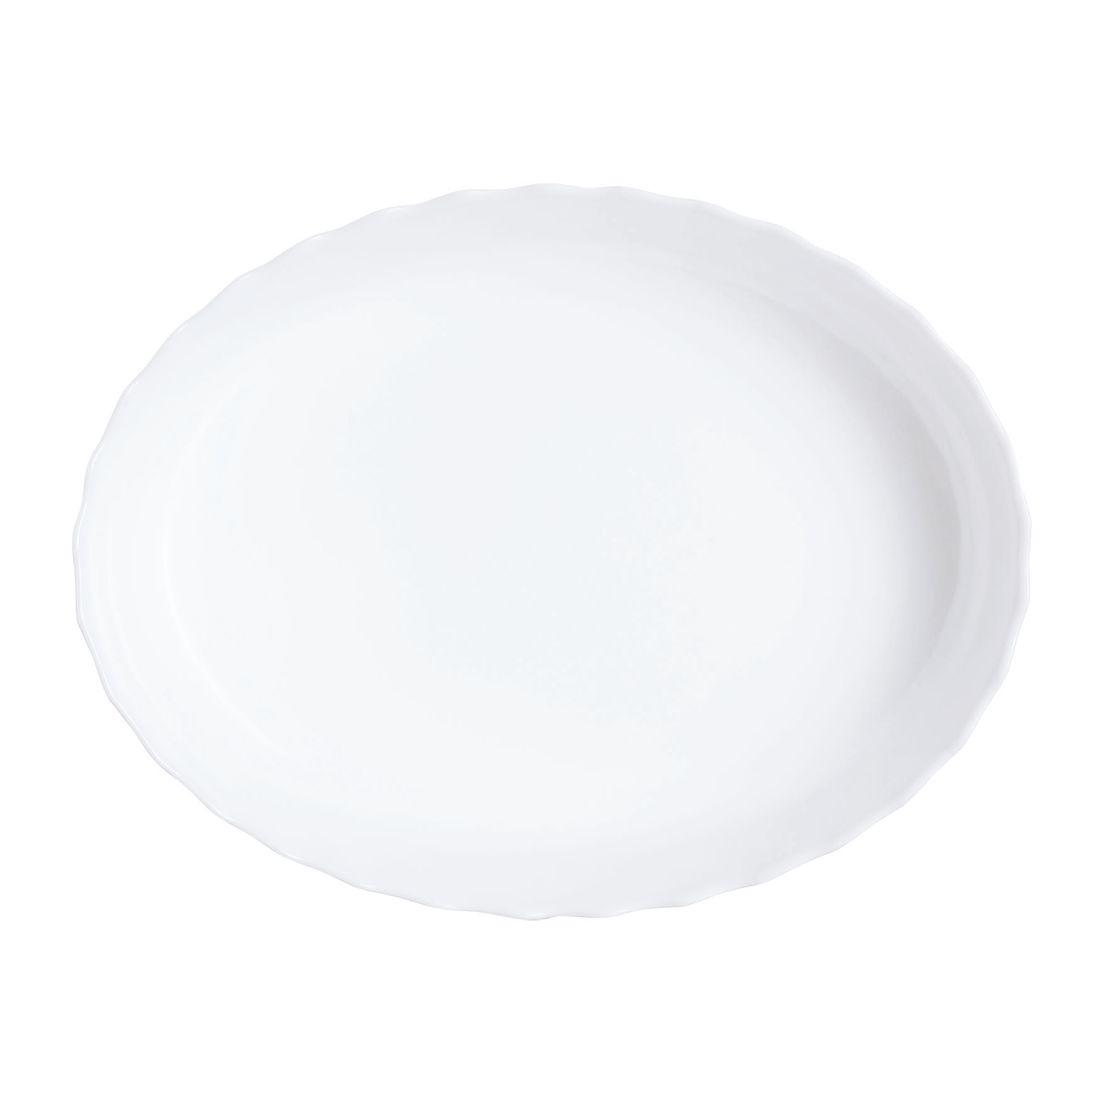 Plat à four ovale blanc 22X17cm Smart Cuisine Trianon 250°C - Luminarc - Opale culinaire extra léger et résistant